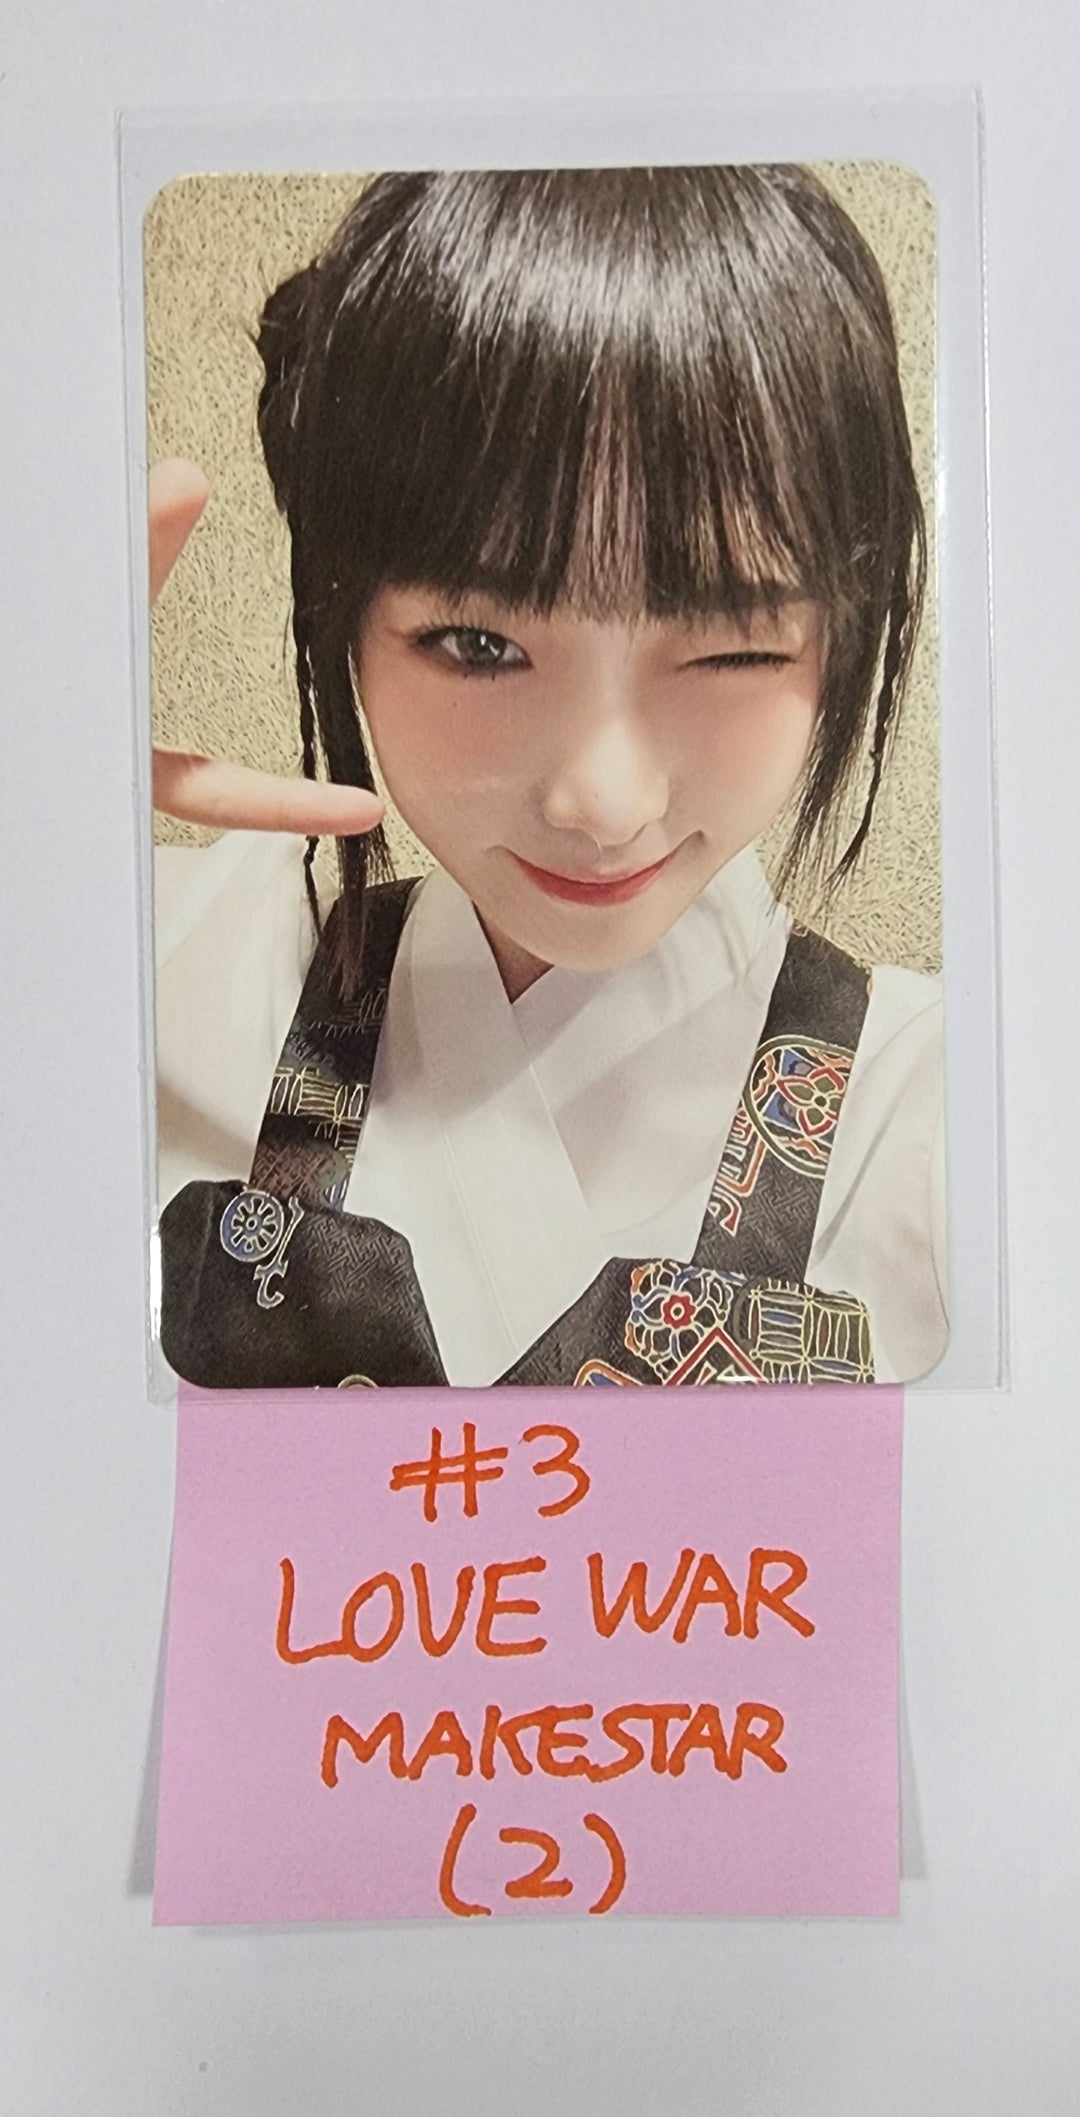 YENA "Love War" - Makestar Fansign Event Photocard Round 2